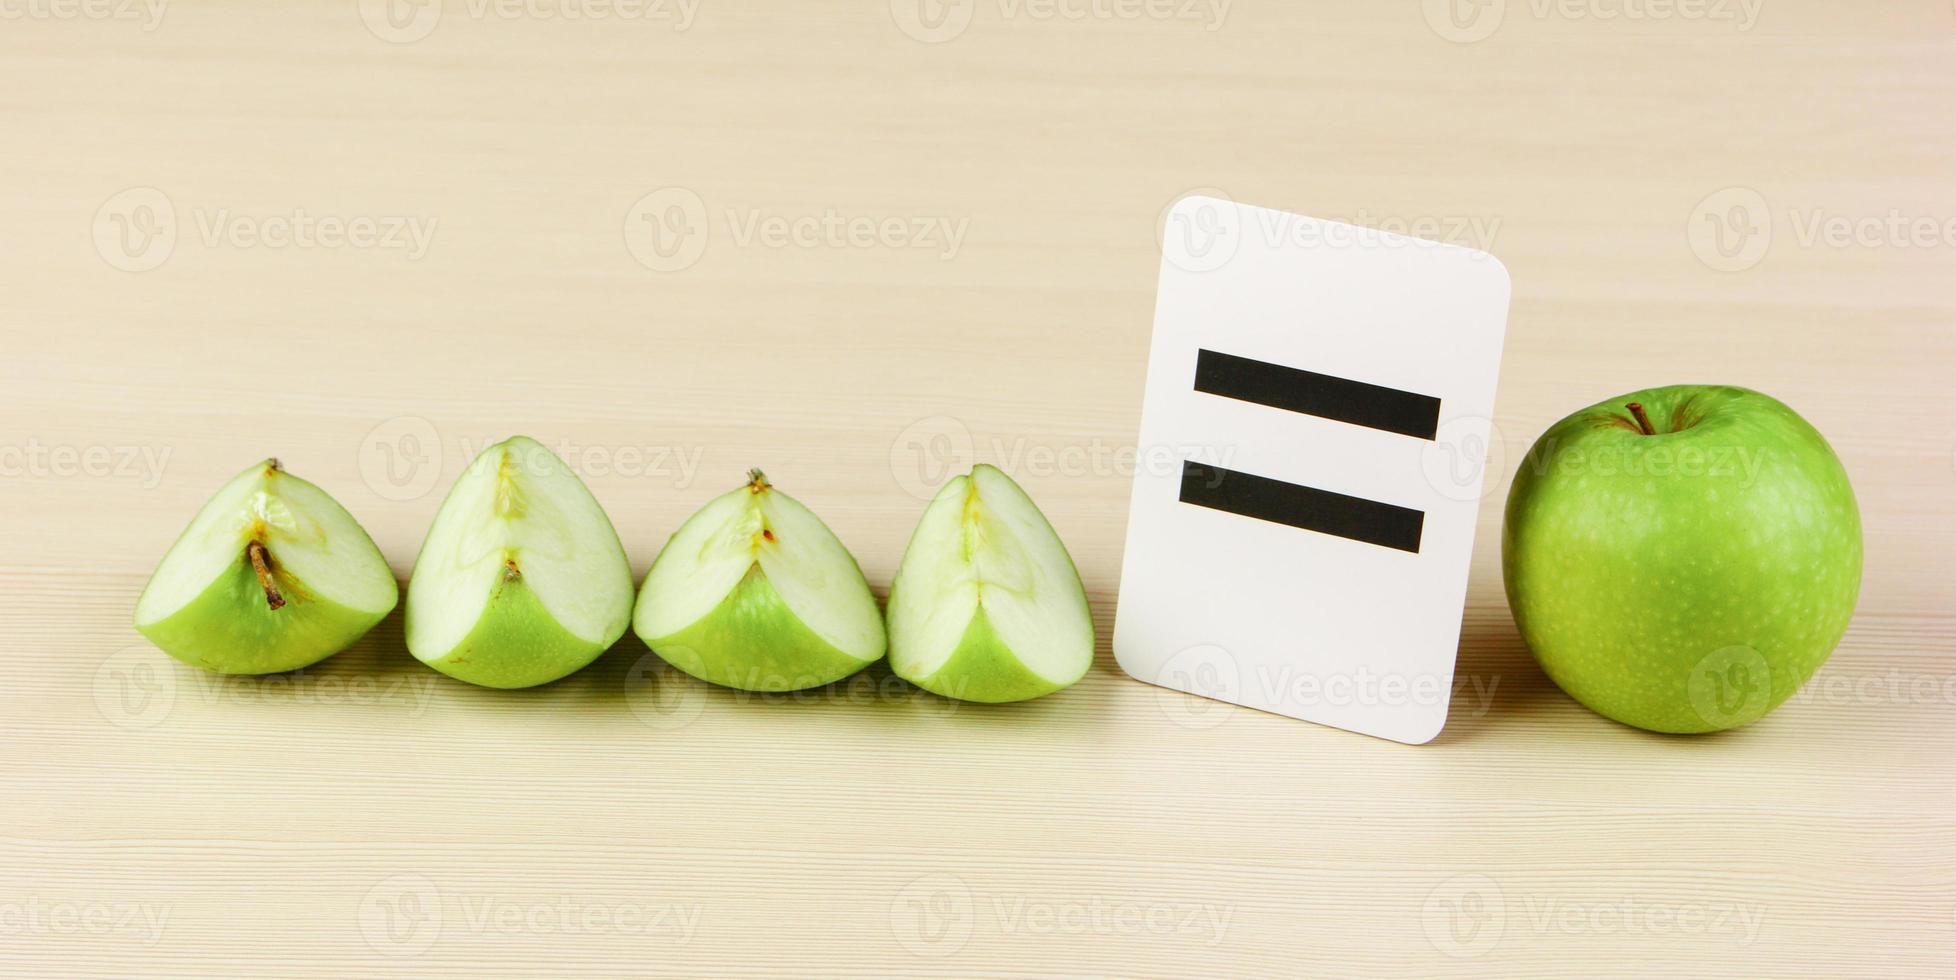 tarjeta escolar y manzana con problemas matemáticos foto